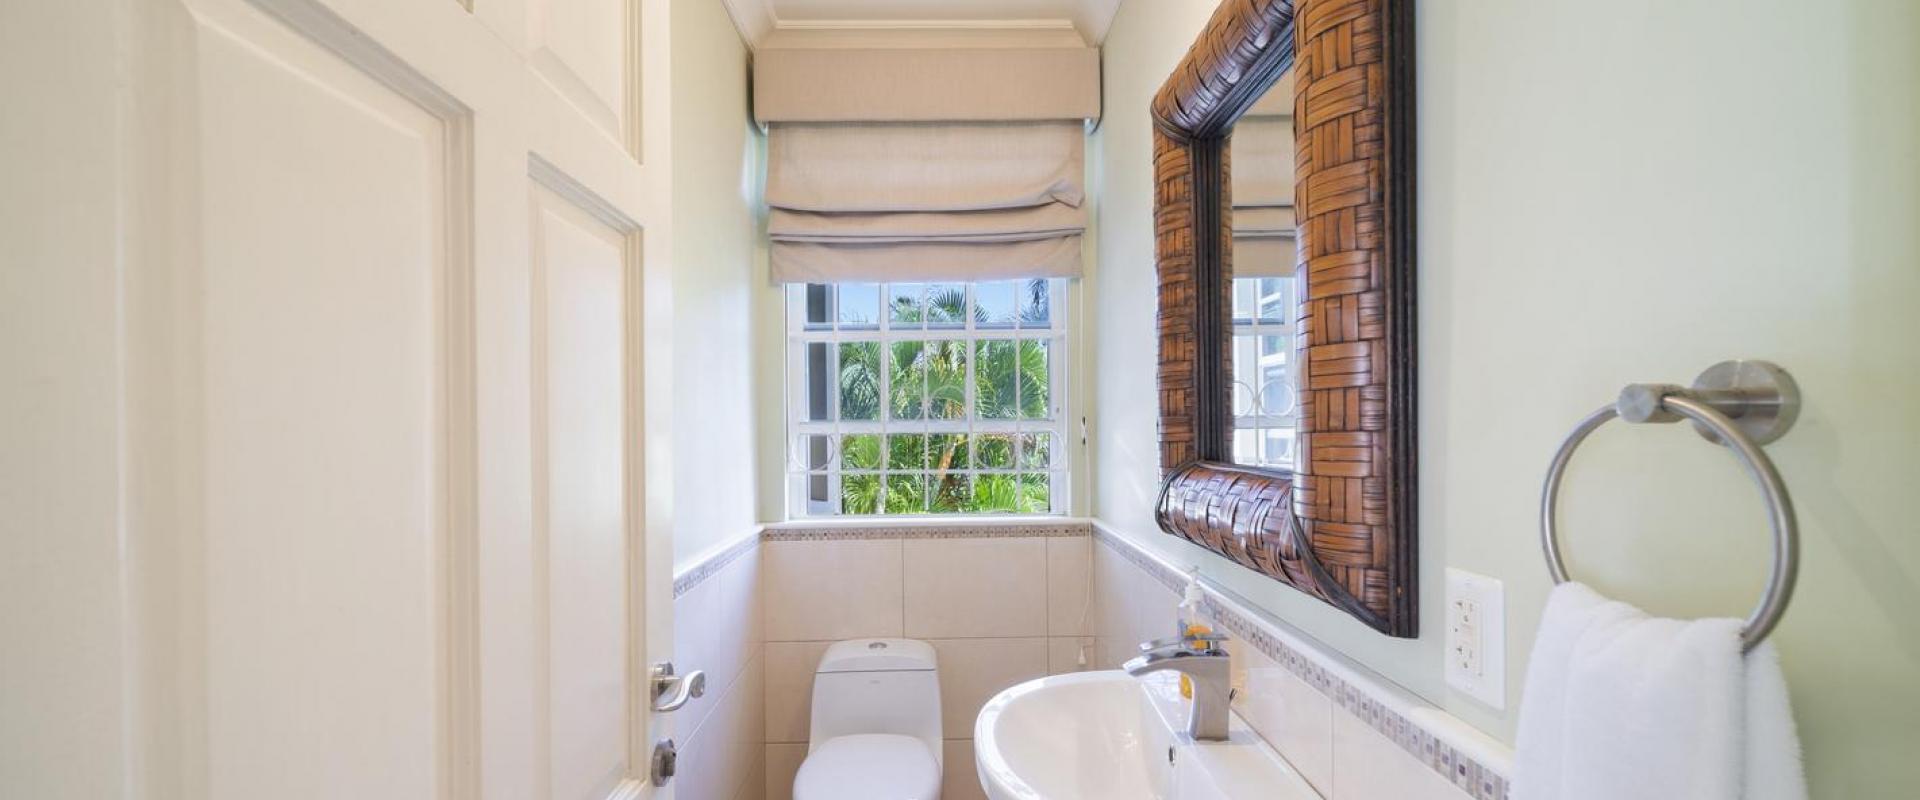 Tara Barbados 4 Bedroom Holiday Rental Villa Guest Toilet